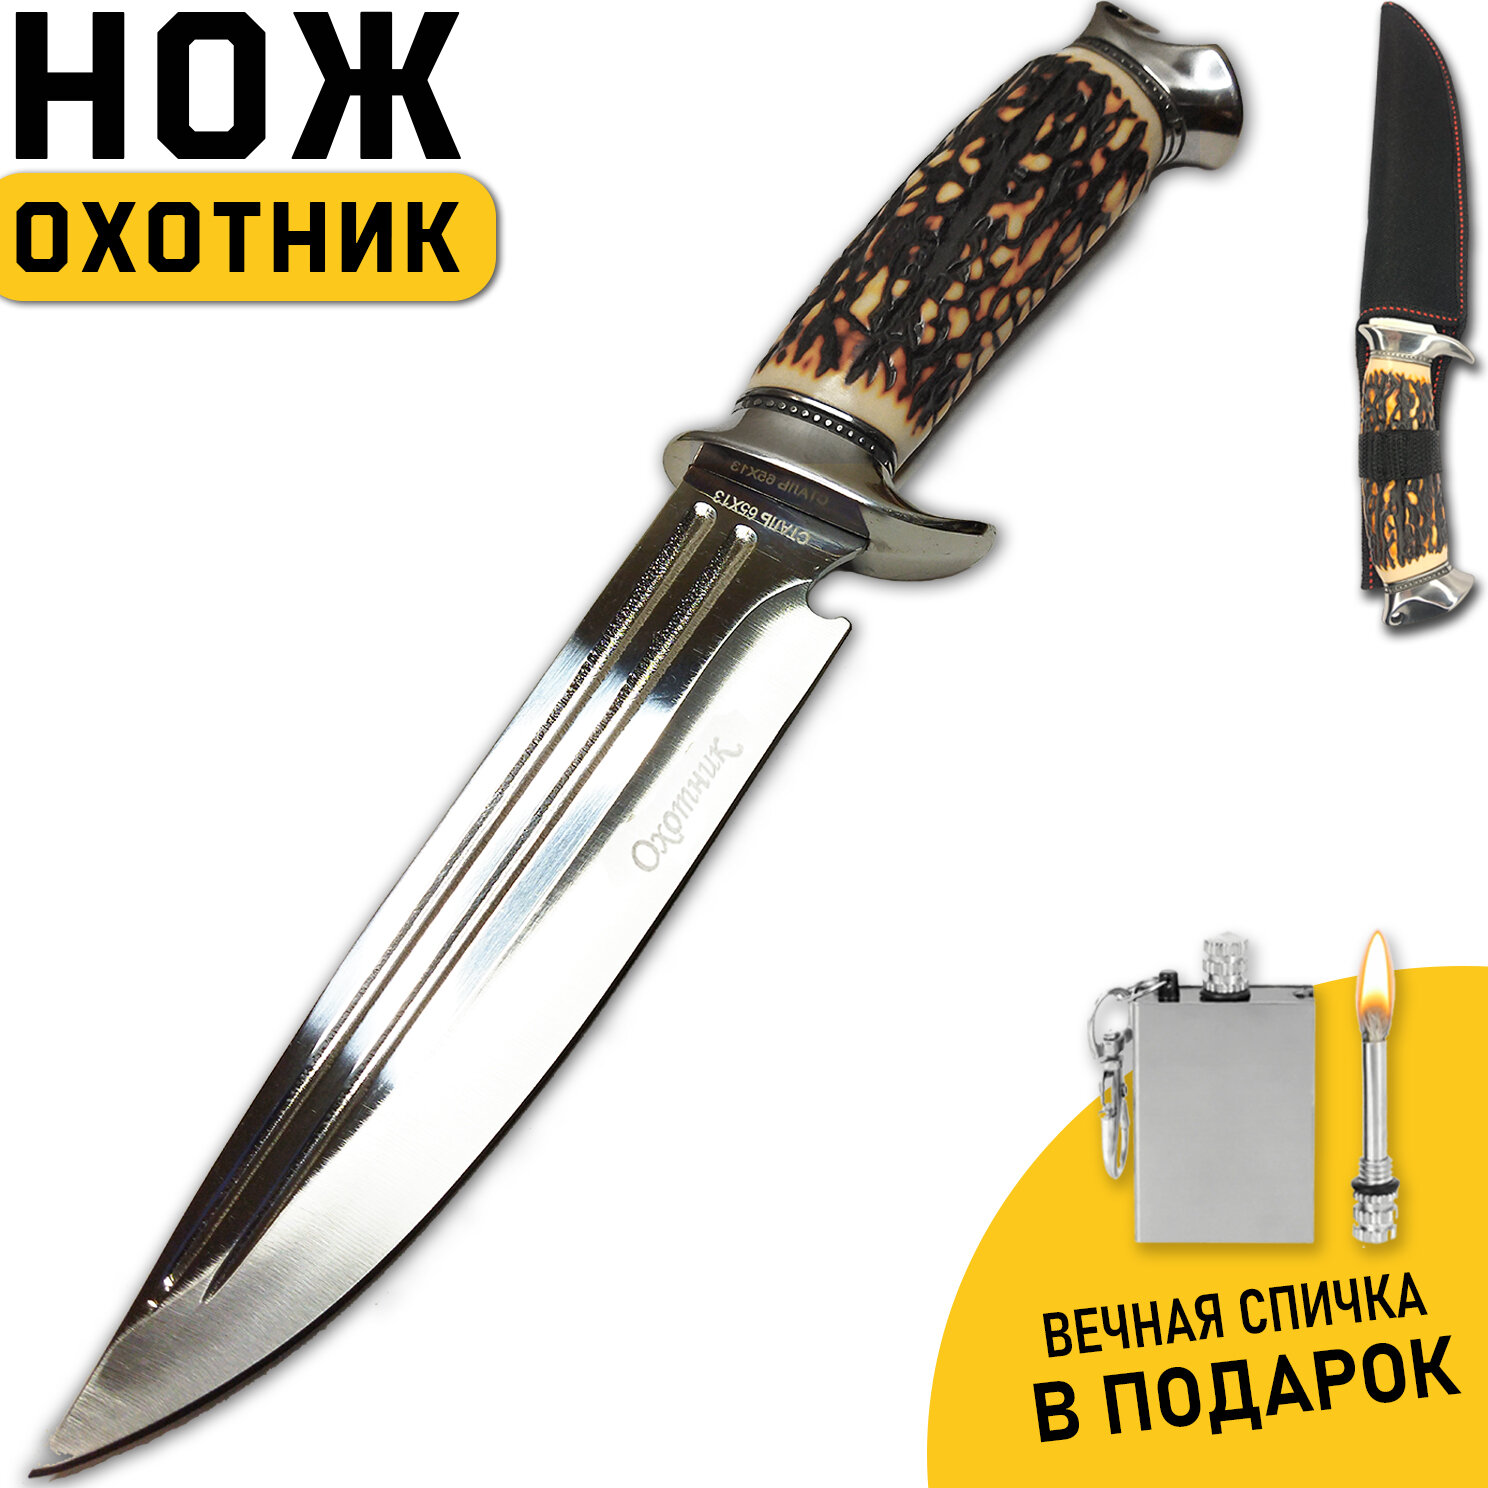 Нож охотничий, туристический "Охотник", длина клинка 17 см, сталь 65Х13, рукоять под кость, чехол + спичка